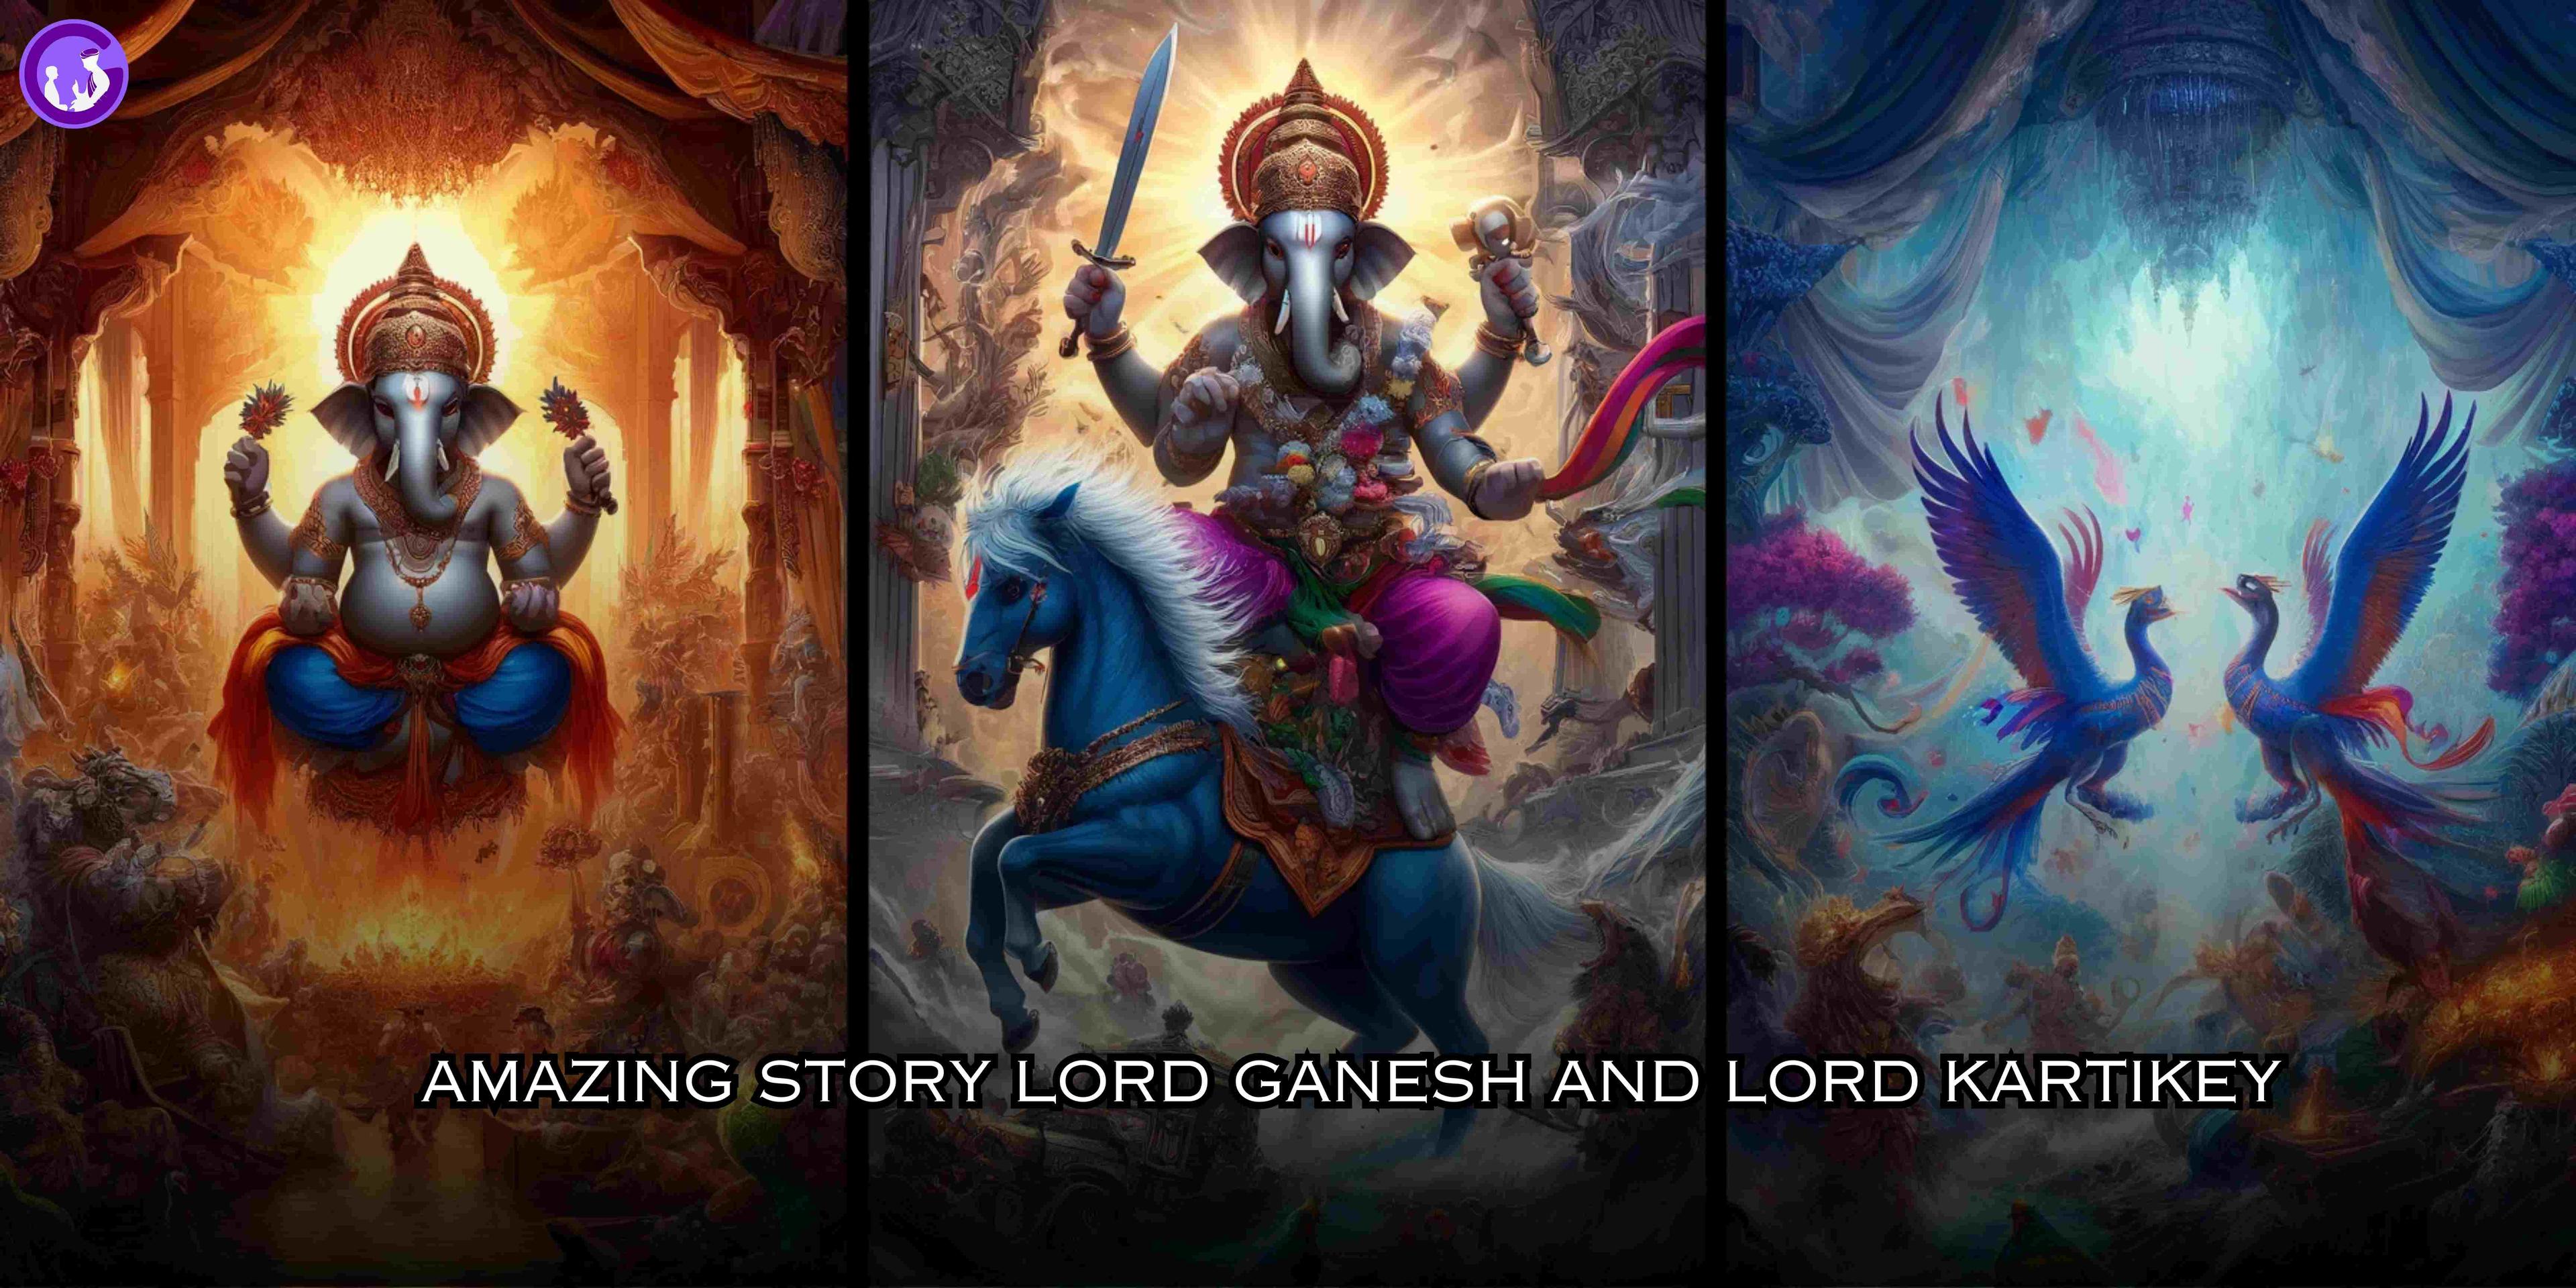 भगवान गणेश कार्तिकेय और उनके परिवार के दिव्य बंधन की कथा